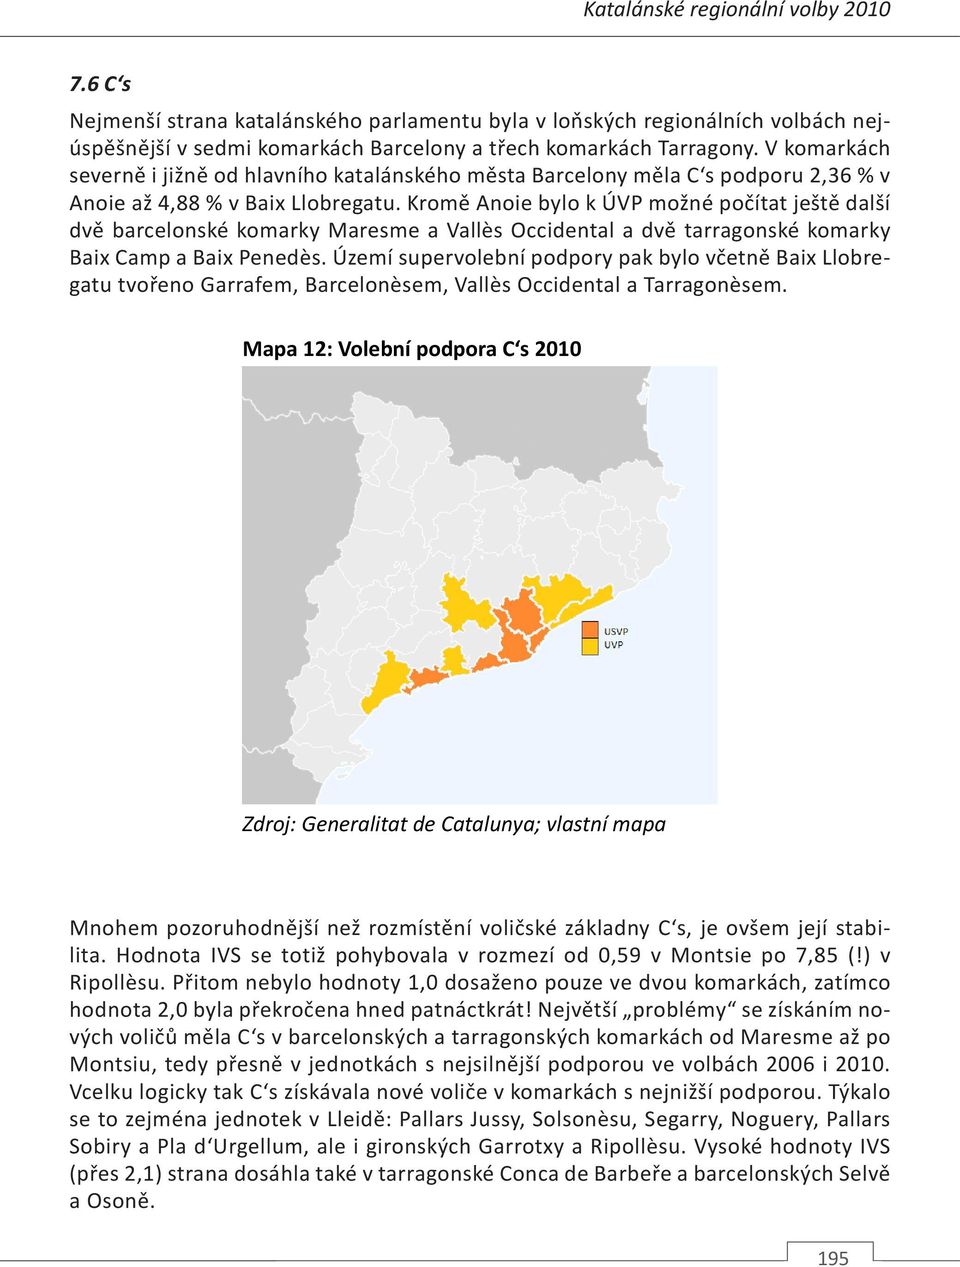 Kromě Anoie bylo k ÚVP možné počítat ještě další dvě barcelonské komarky Maresme a Vallès Occidental a dvě tarragonské komarky Baix Camp a Baix Penedès.